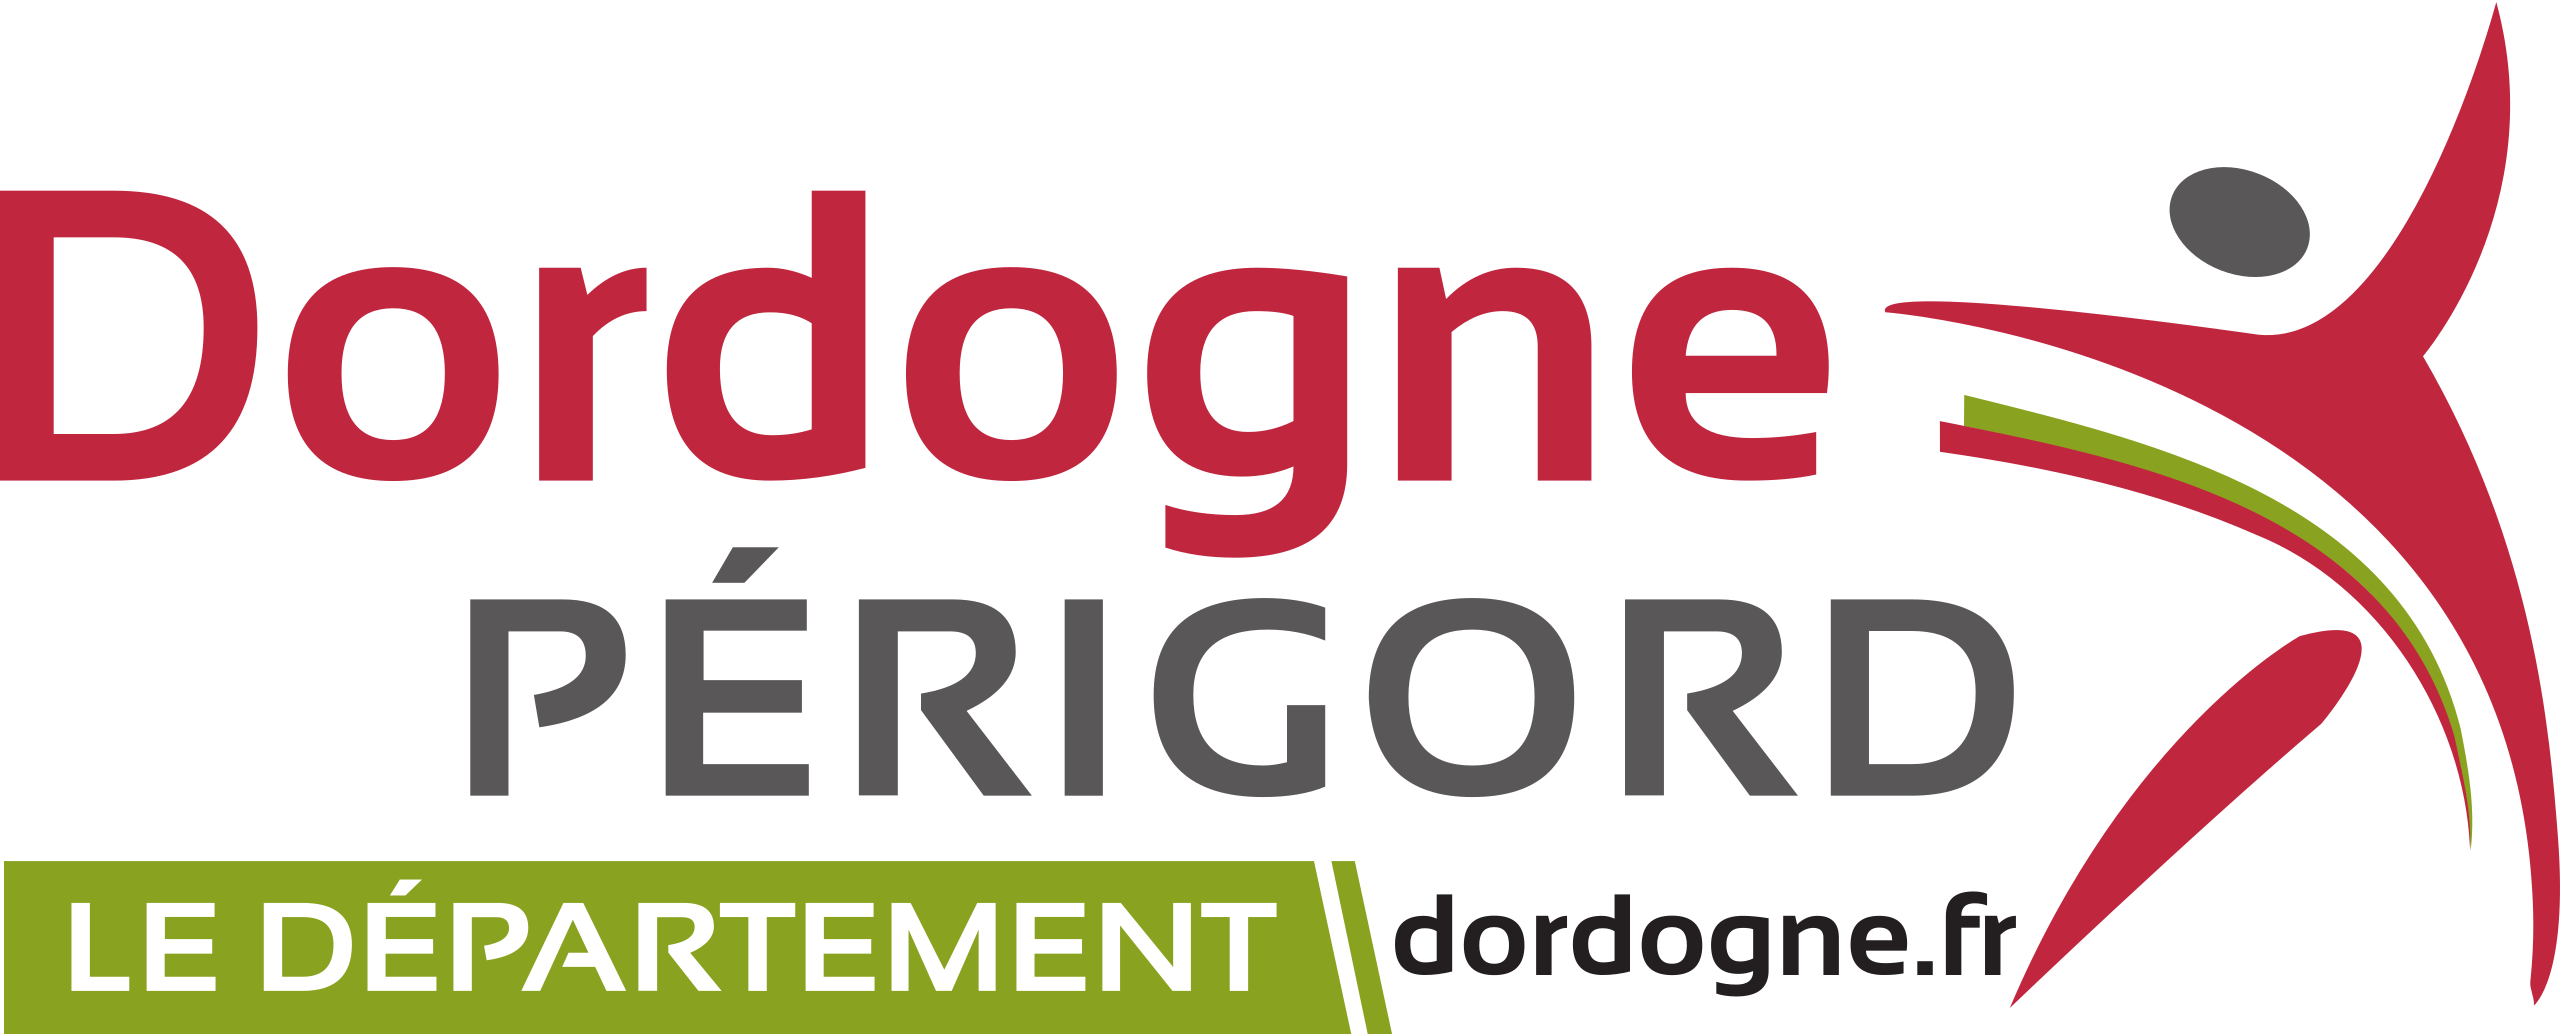 Logo Département Dordogne Périgord